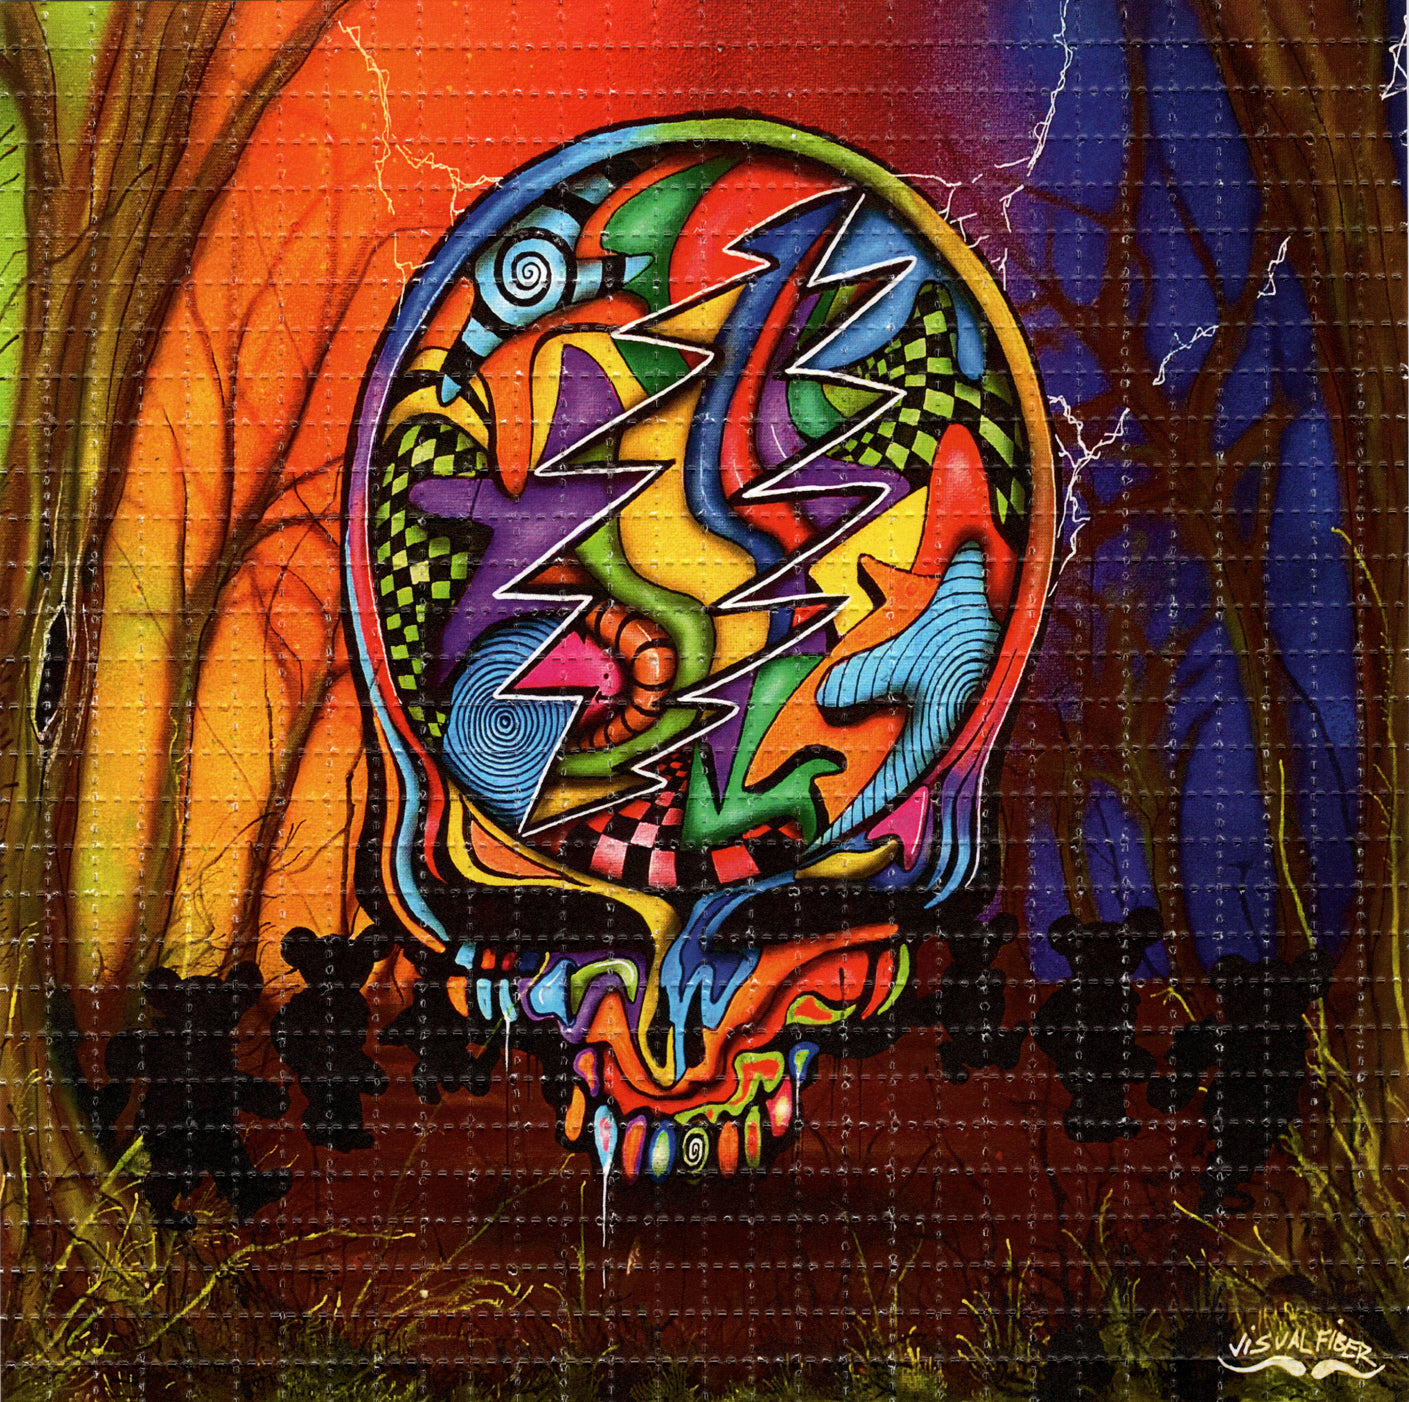 Deadhead Skull woods by Visual Fiber SIGNED Limited Edition LSD blotter art print